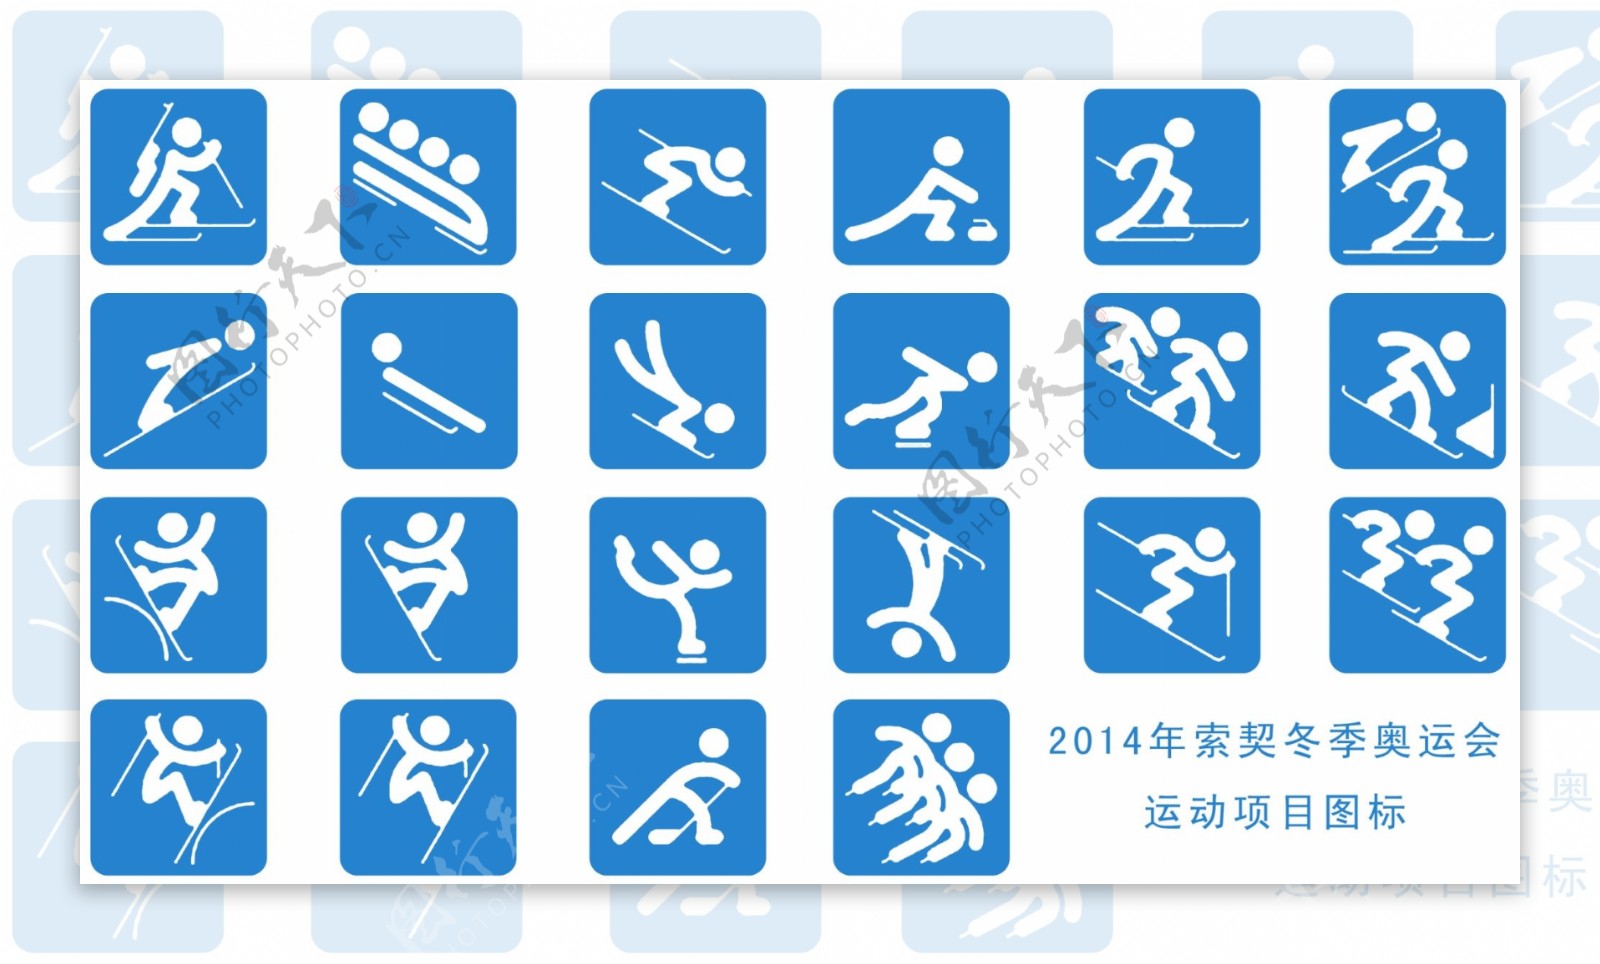 2014年索契冬季奥运会运动项图片